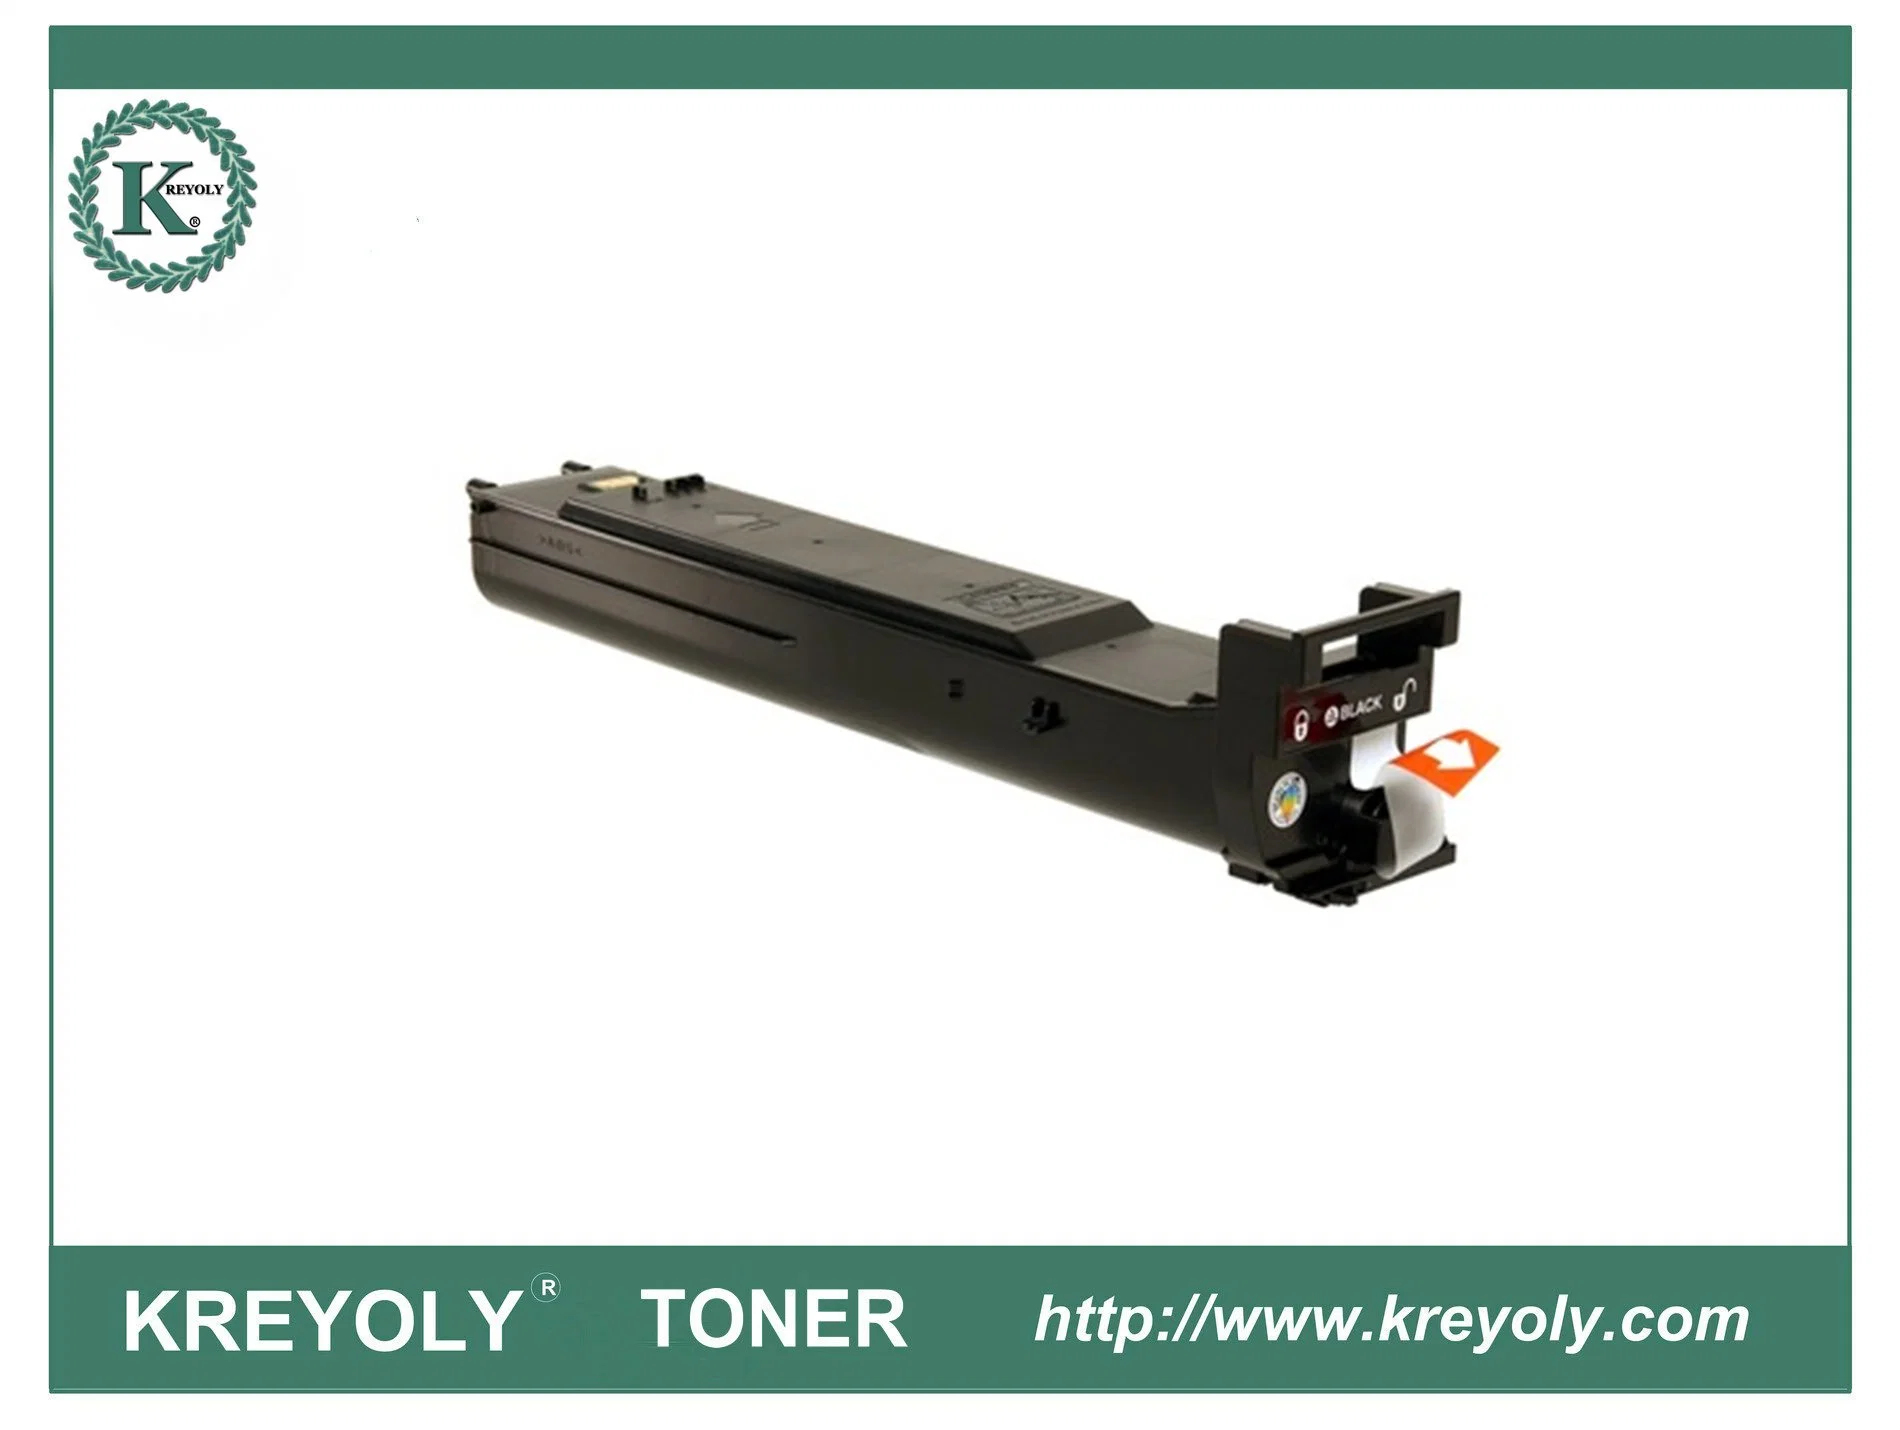 Compatible Color Toner  TN 318 for Konica Minolta Bizhub C20 C20P C20PX copier toner cartridge 10%OFF